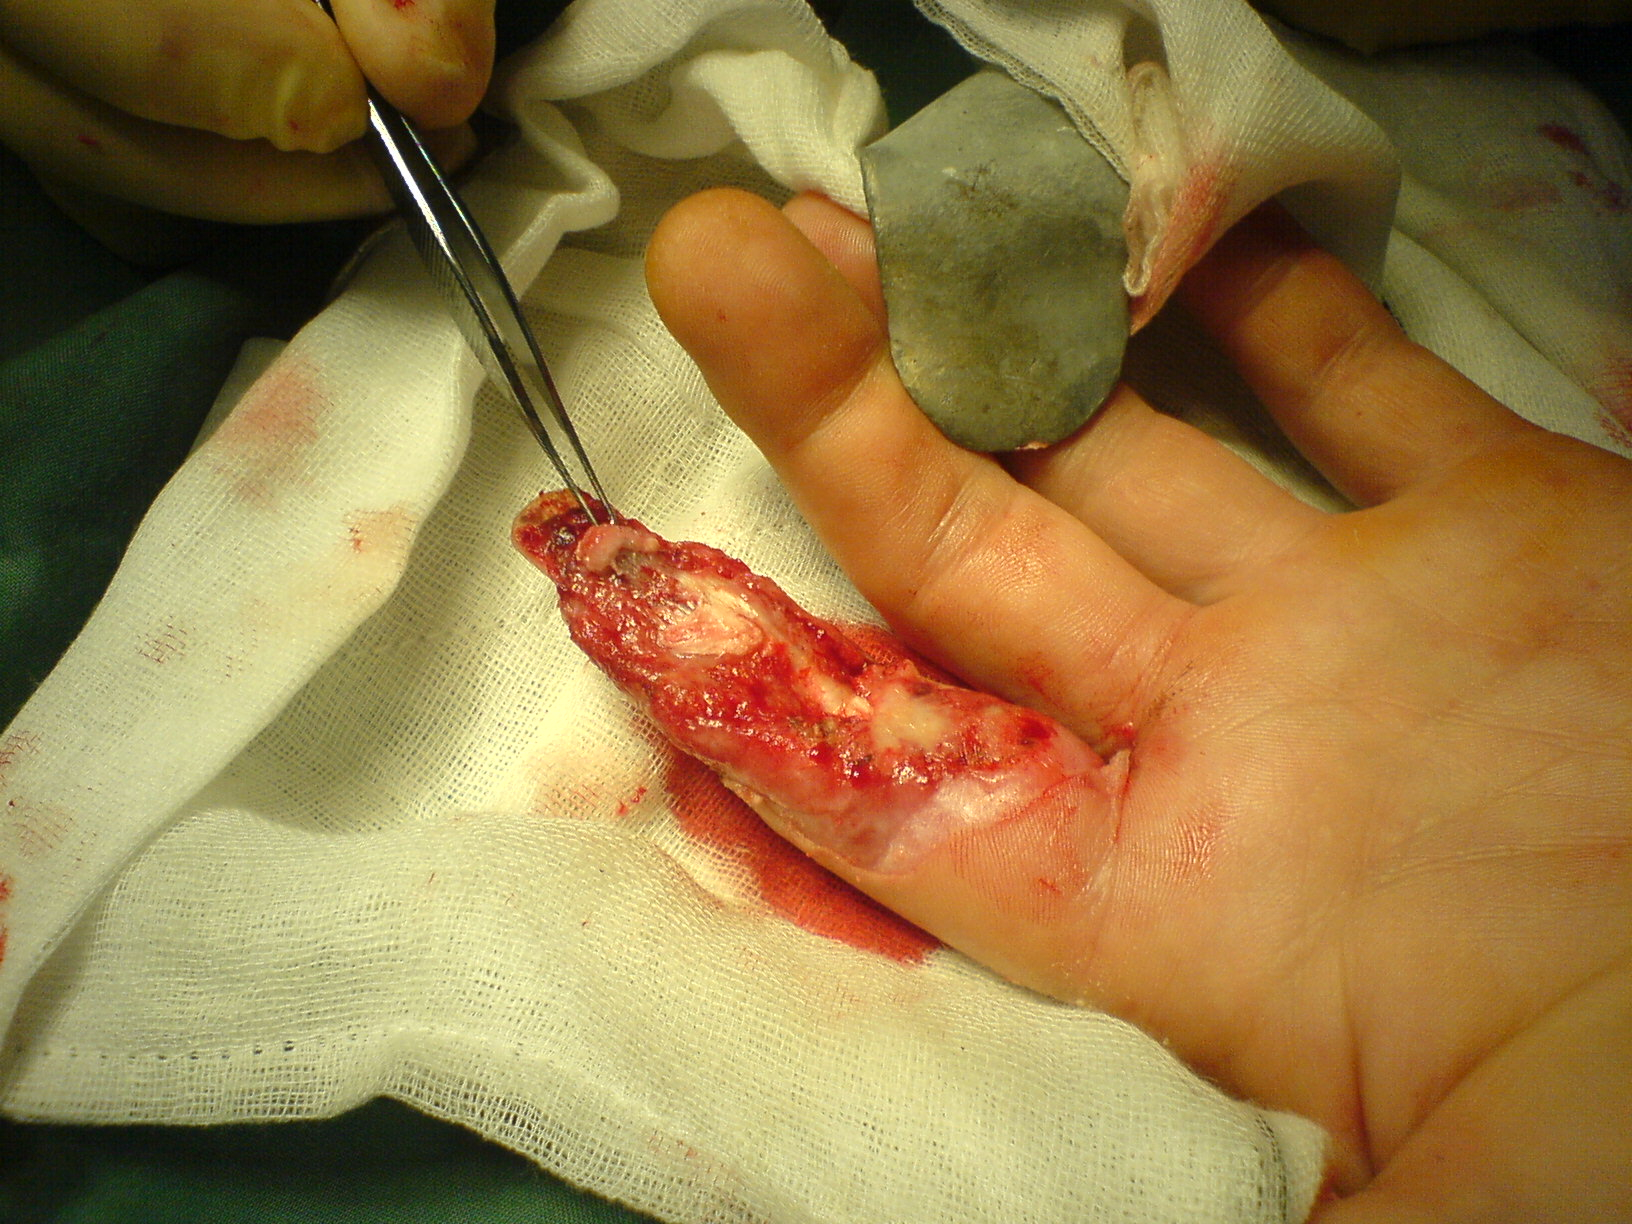 de-puplped finger injury